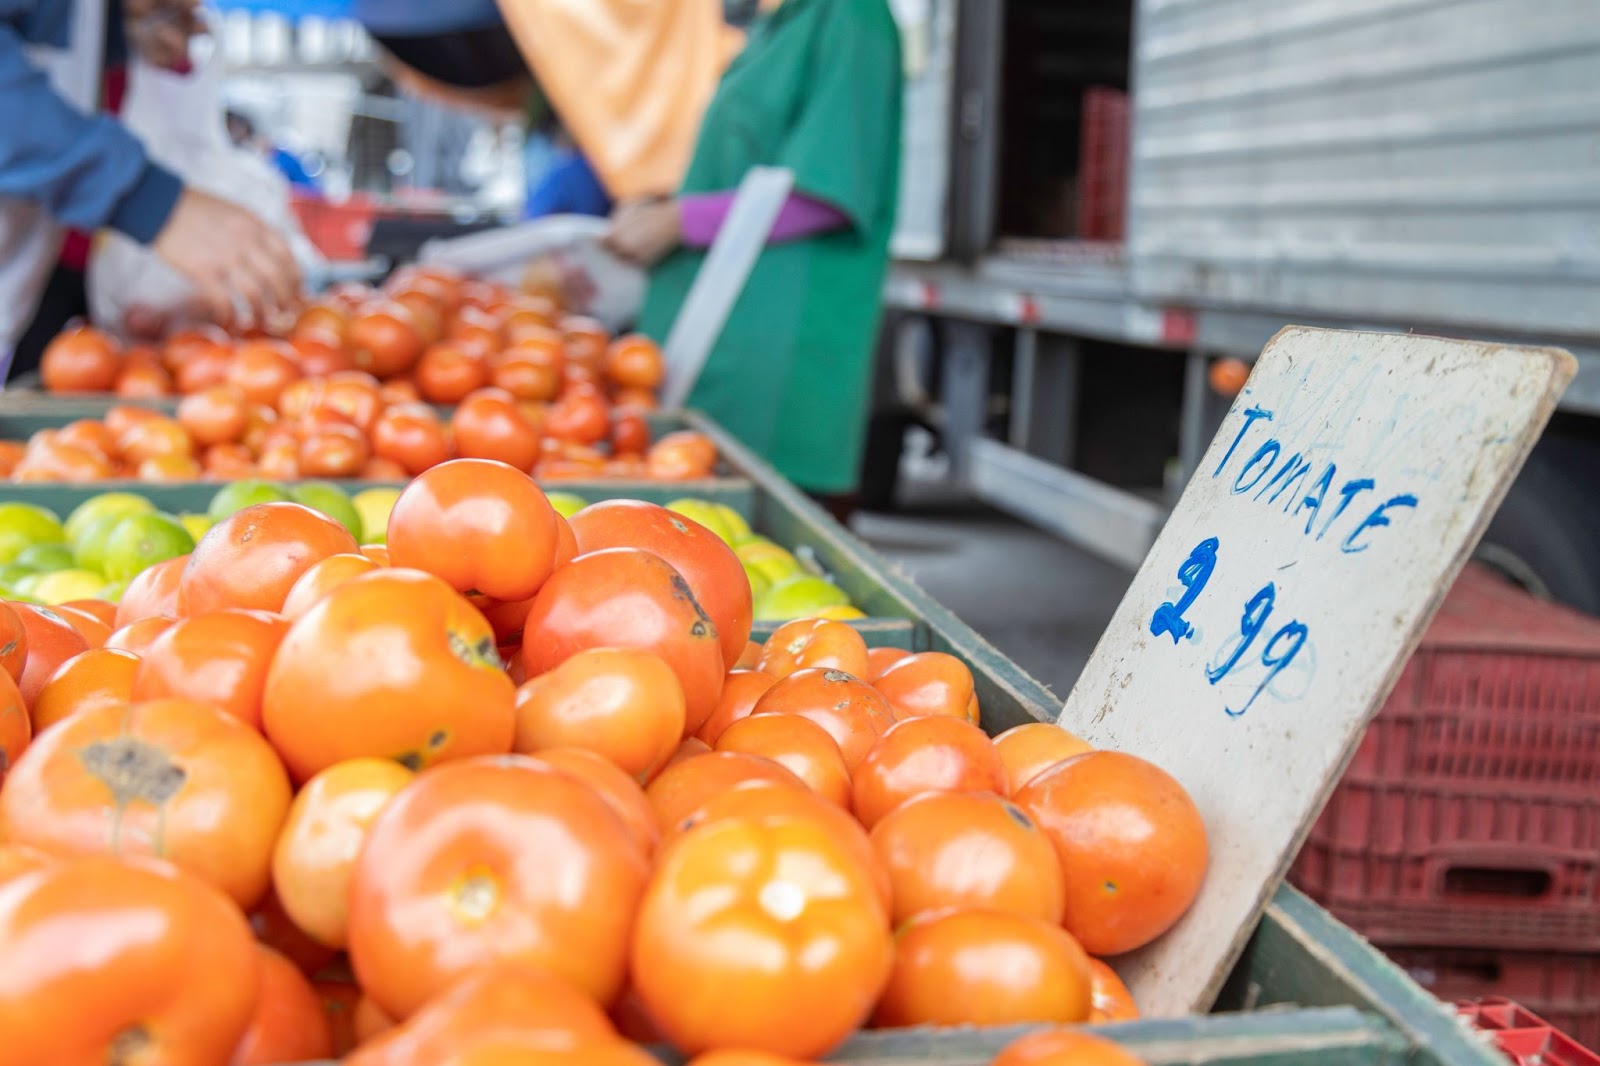 Frutas e legumes expostos para venda em um mercado público. Há principalmente tomates e limões.